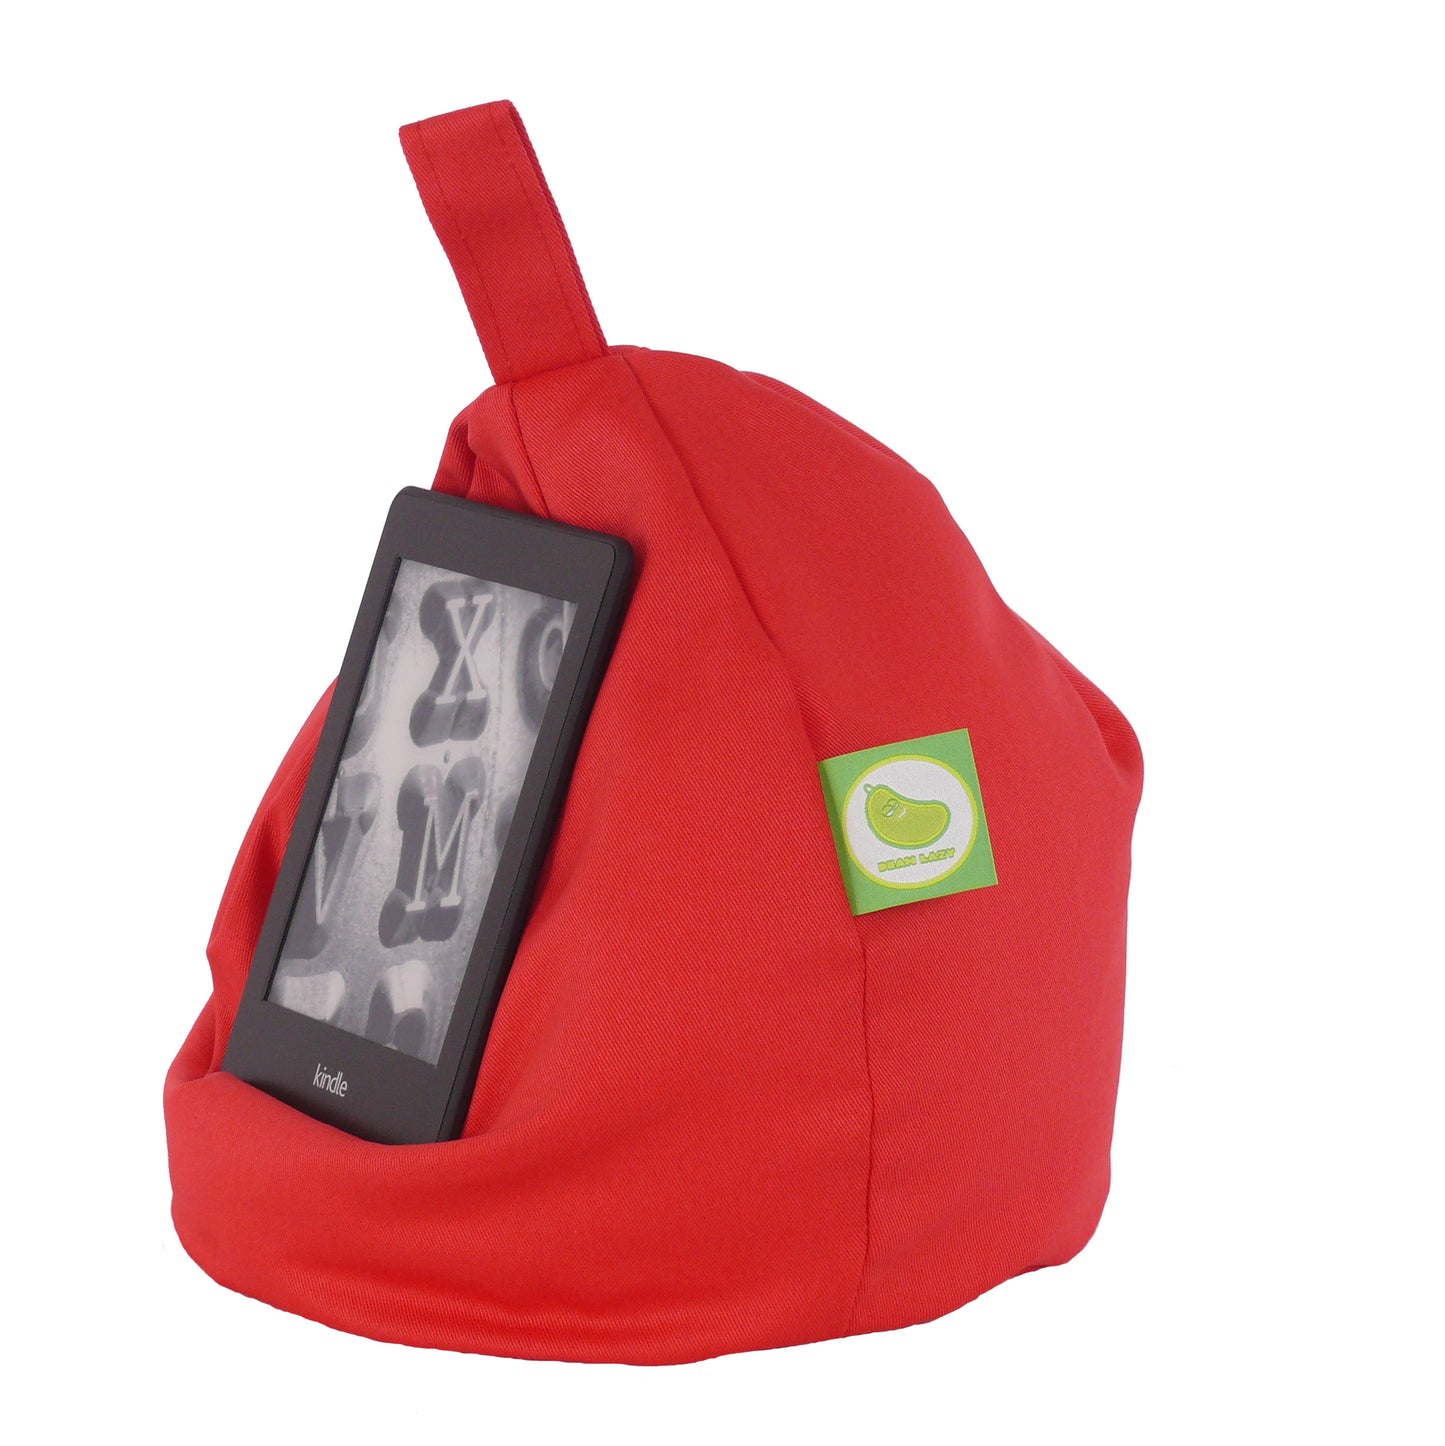 Waterproof Red iPad, eReader & Book Mini Bean Bag